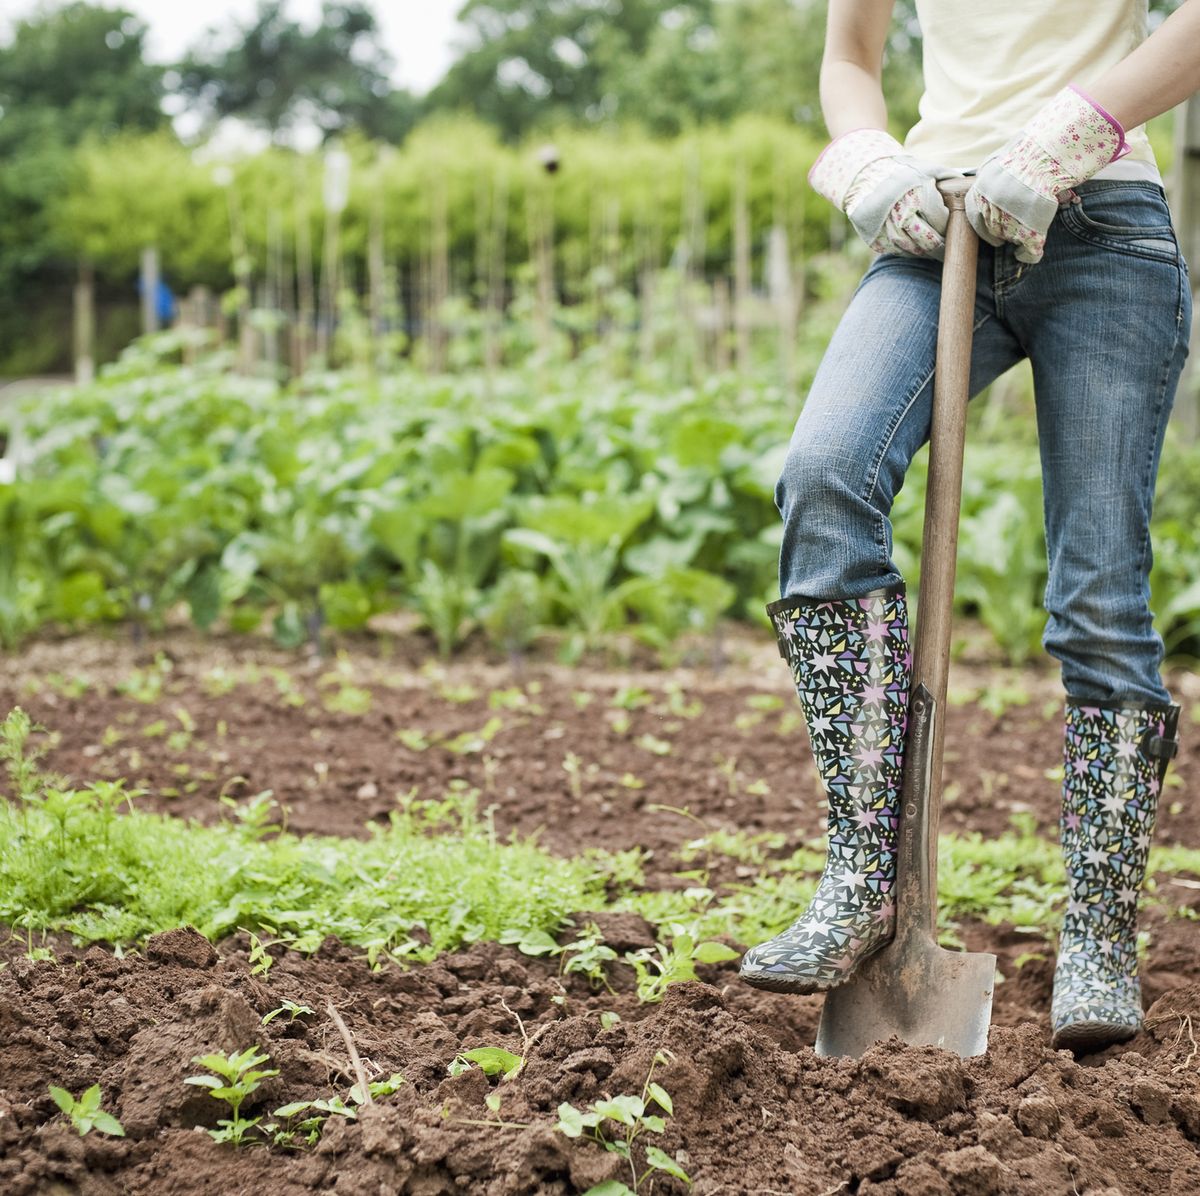 Insten Soil Ph Meter, Soil Moisture / Light / Ph Tester, For Gardening,  Plant Care, Farming, Gardening Tool Kits, Black : Target